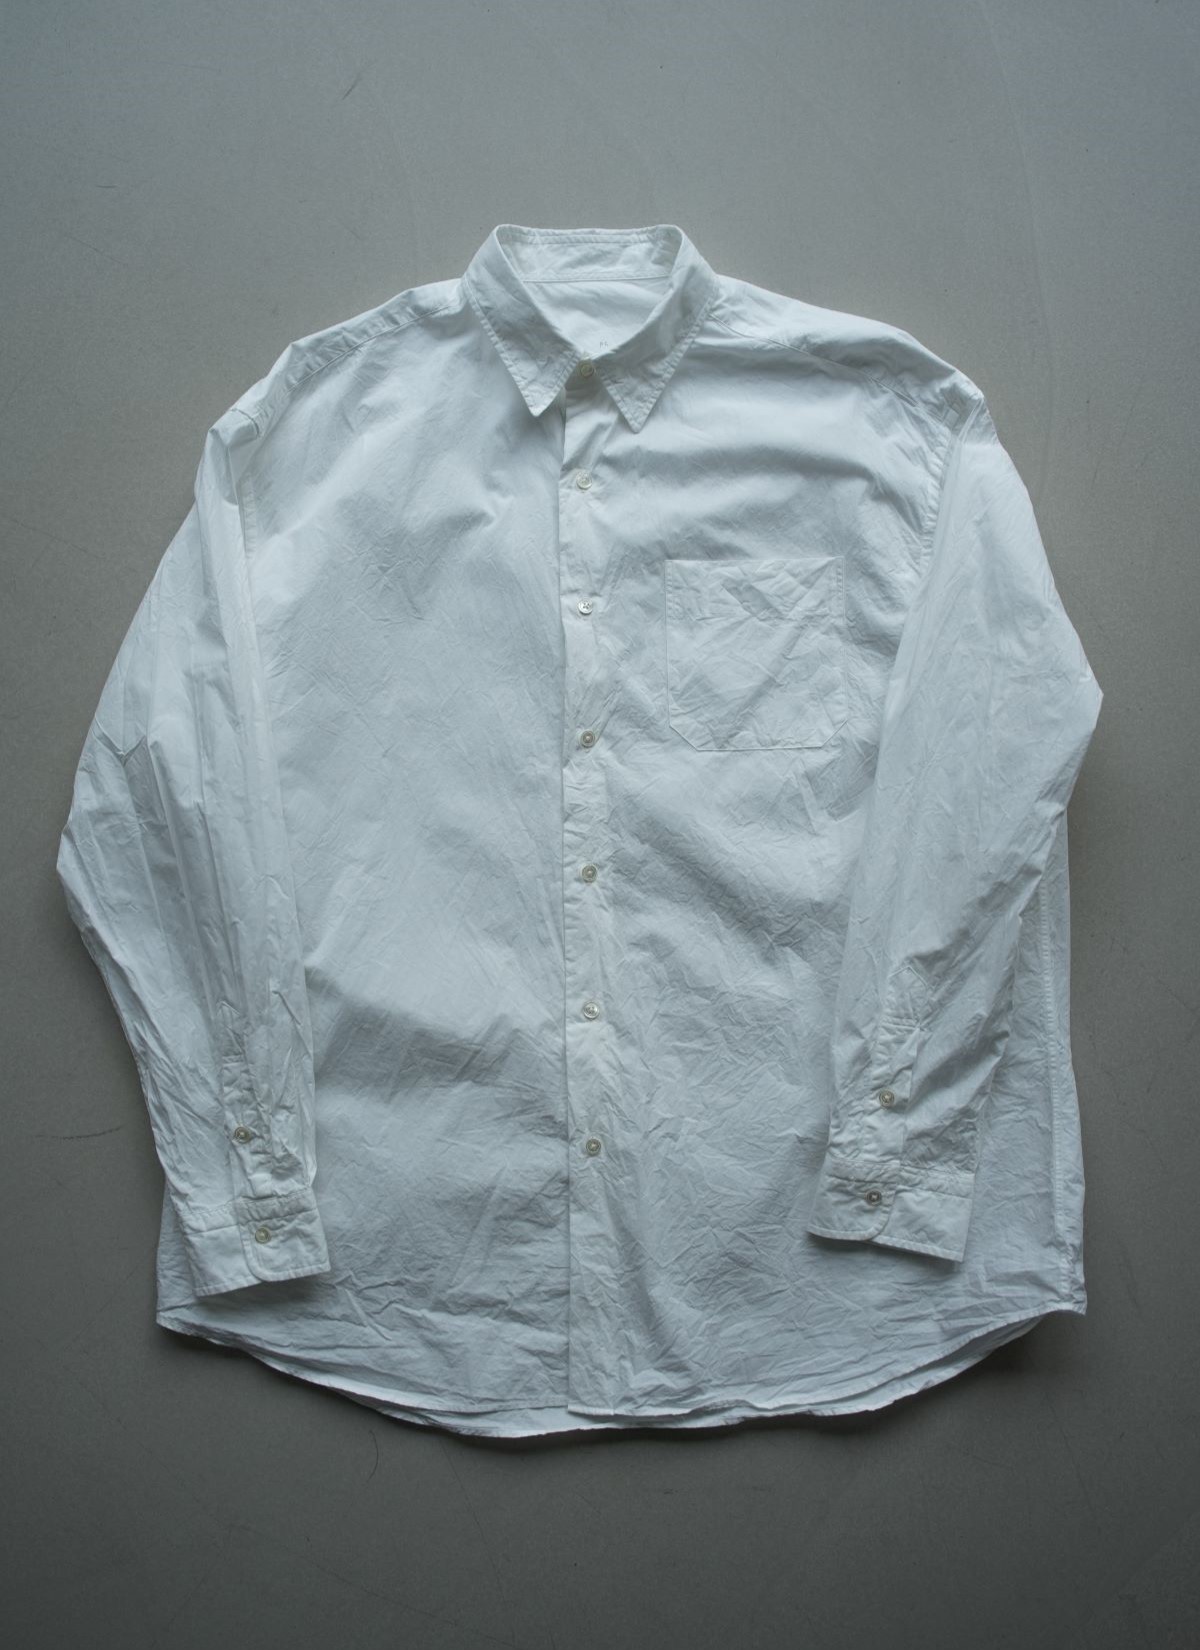 Classic Shirt White